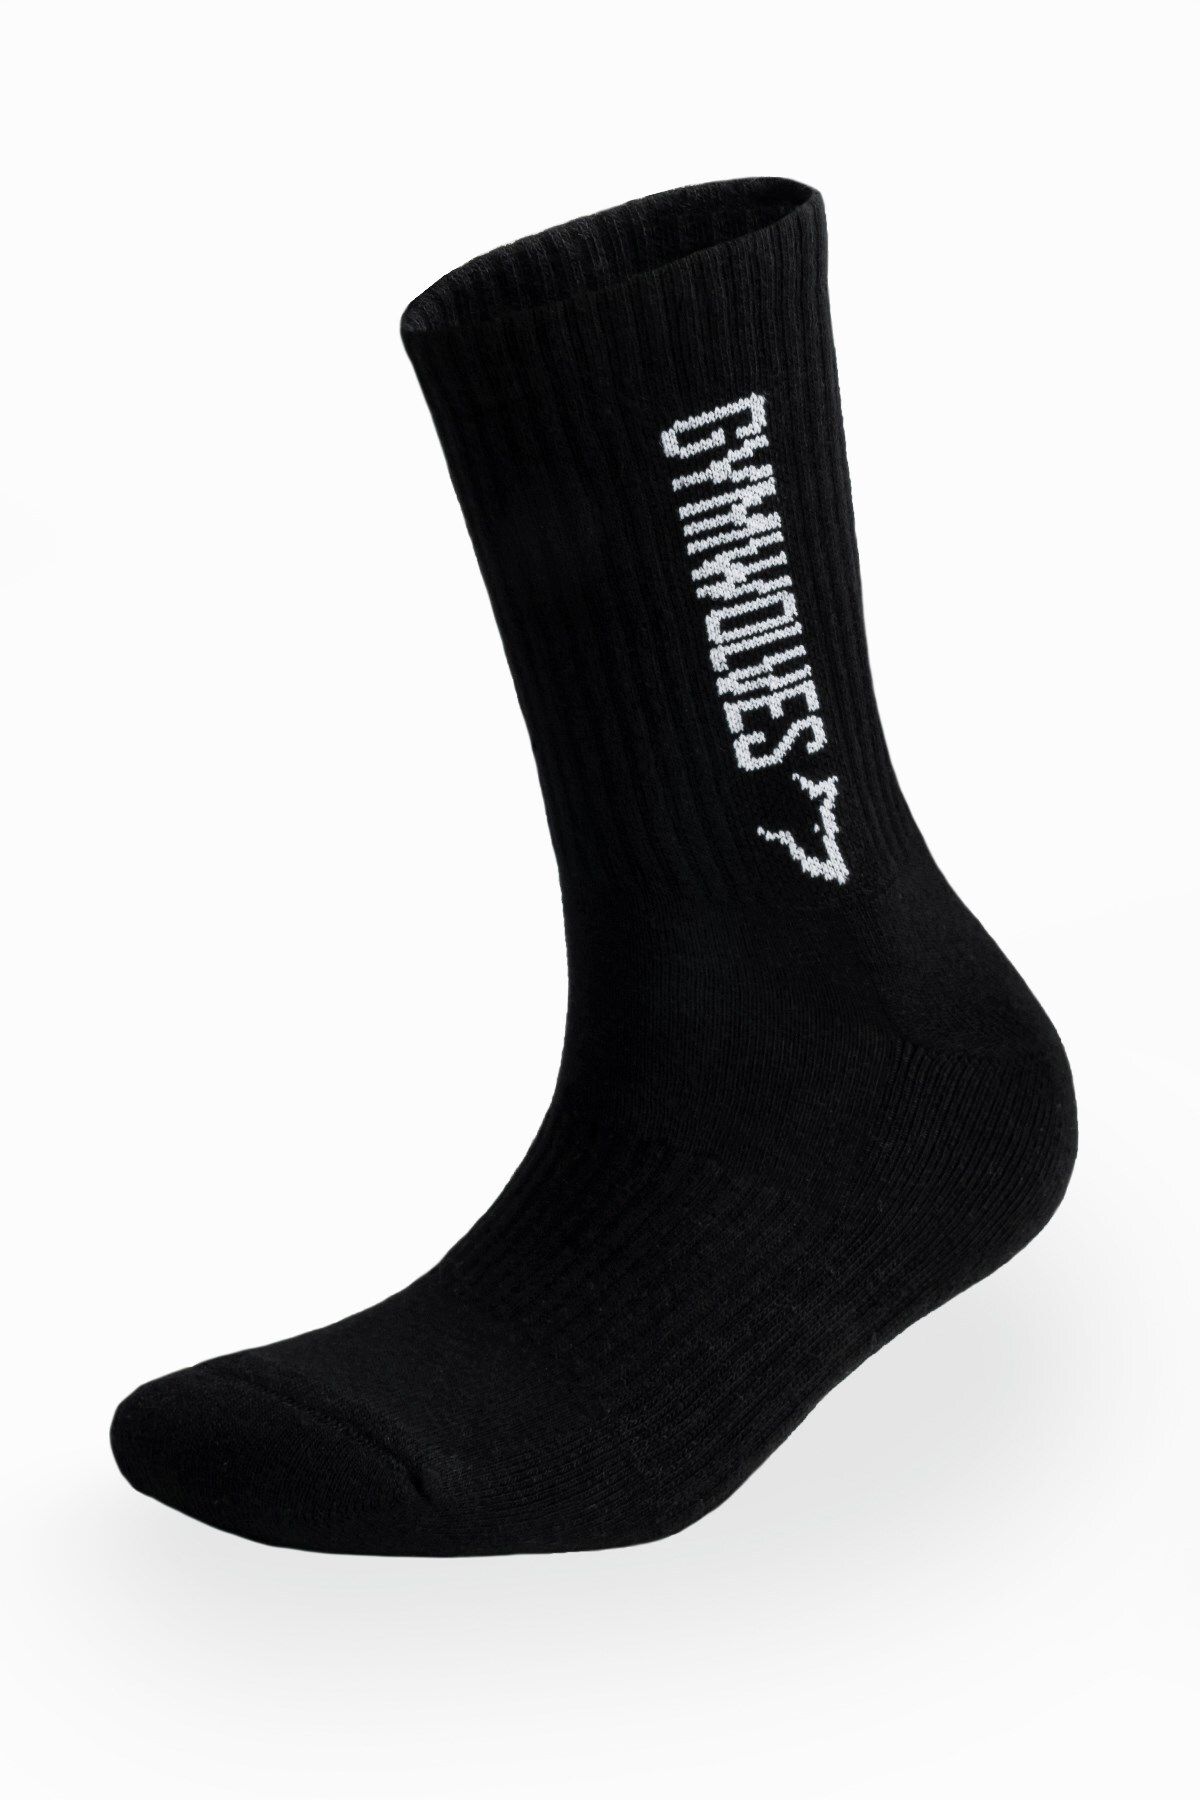 Gymwolves Atlatik Spor Çorap | 3 Lü Paket | Siyah | Unisex Çorap | Sock |